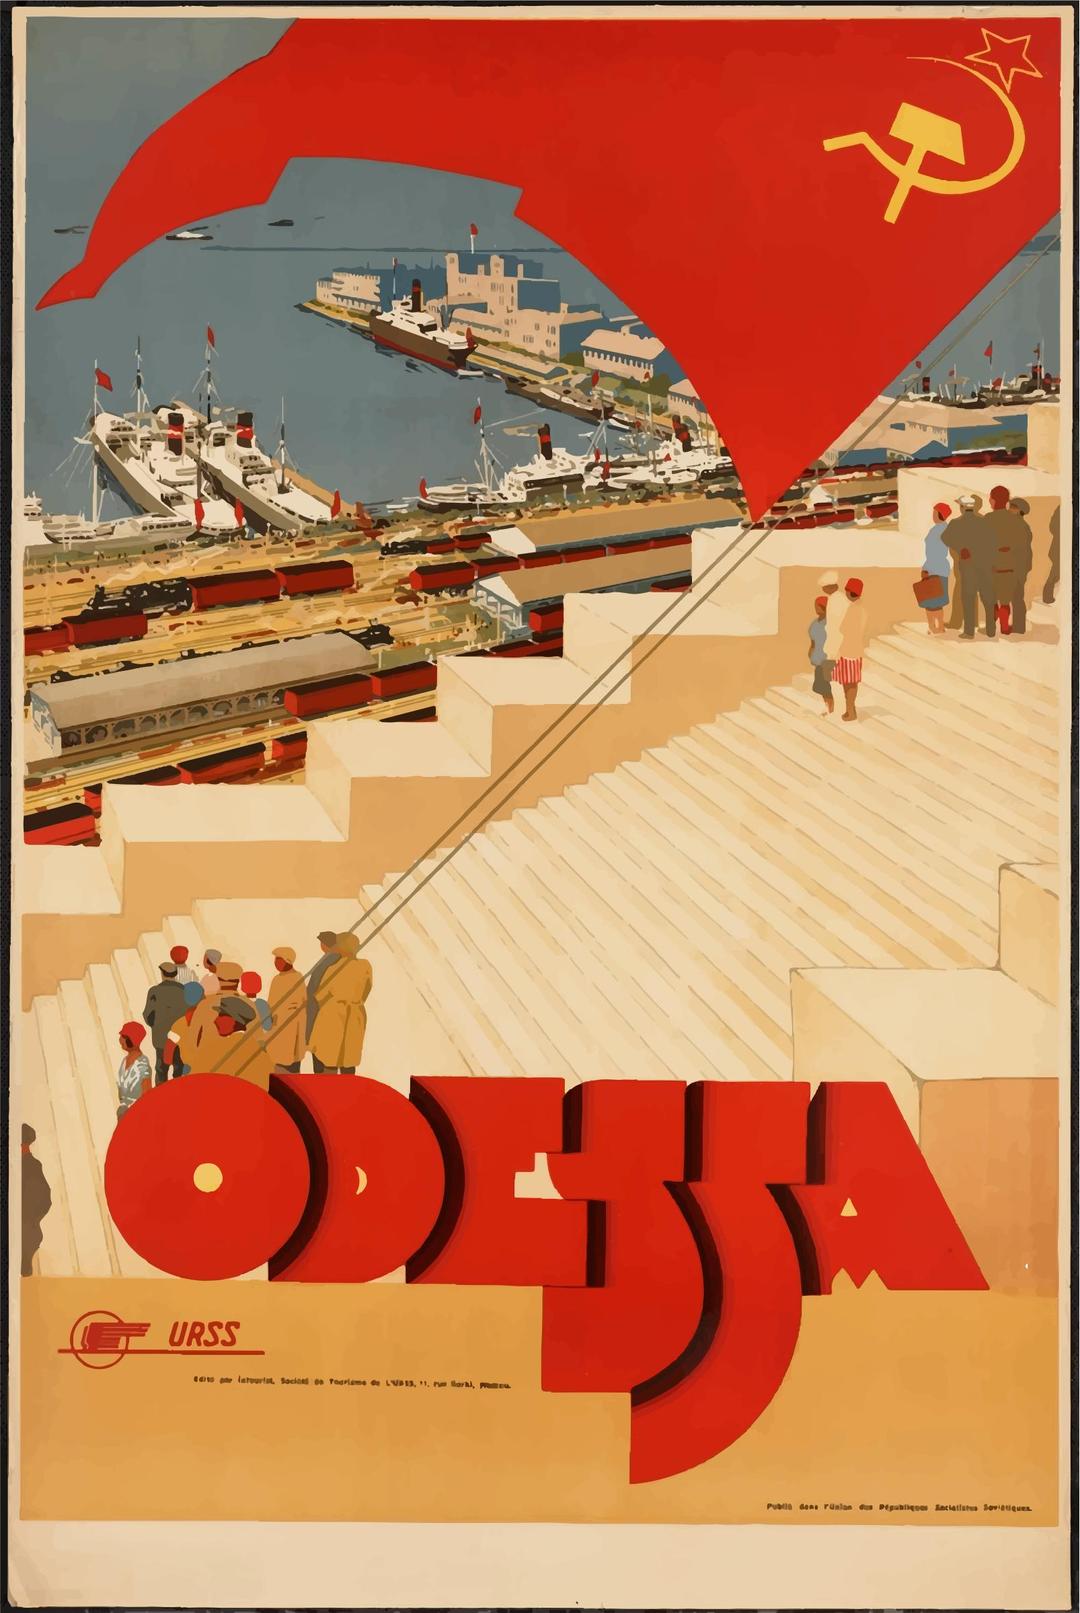 Vintage Travel Poster Odessa Ukraine png transparent